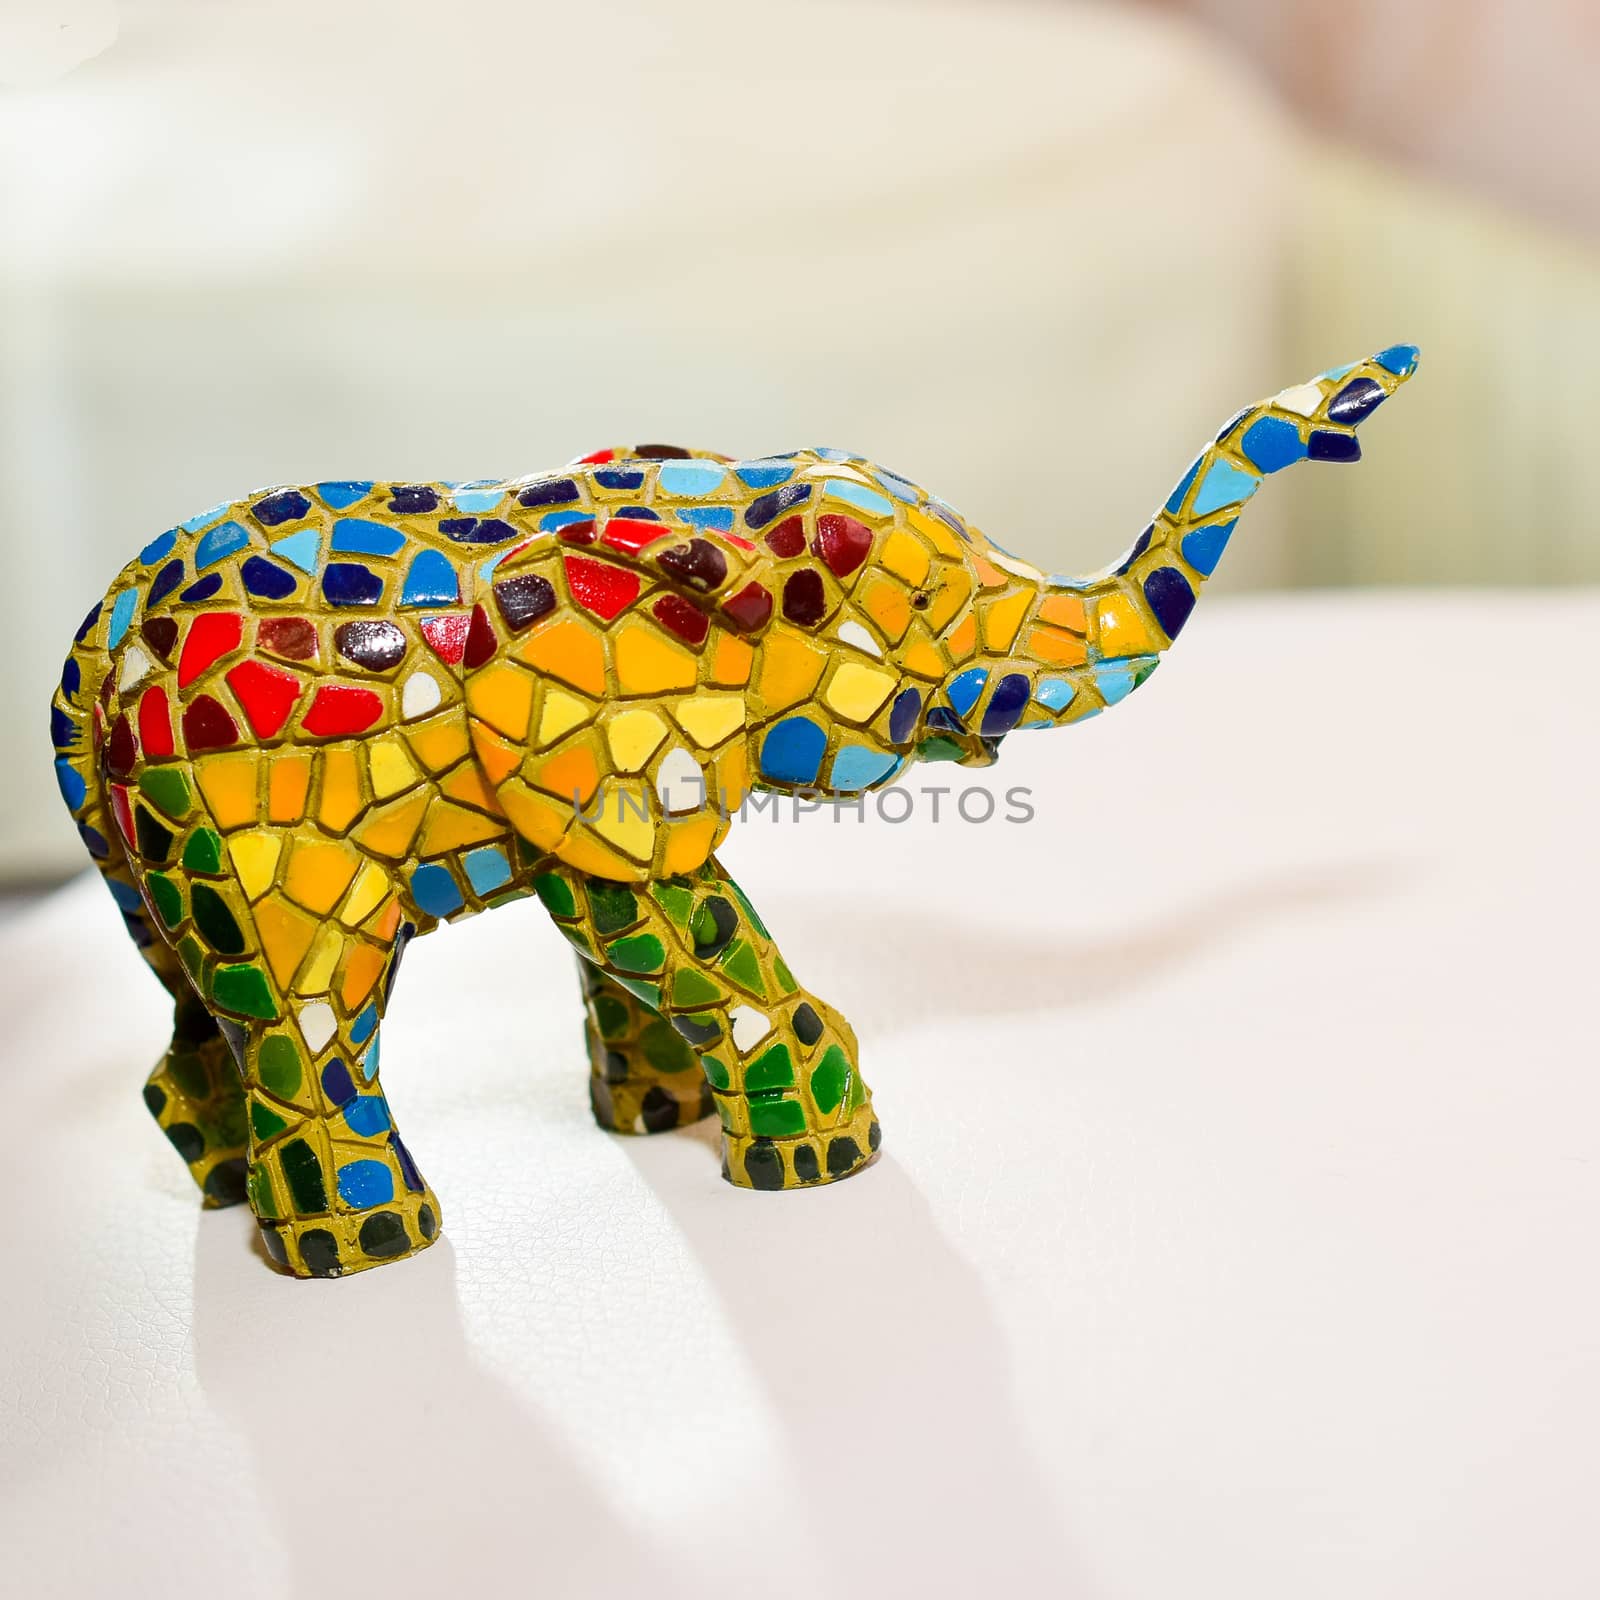 miniature figurine elephant made of semi-precious materials by alexandr_sorokin